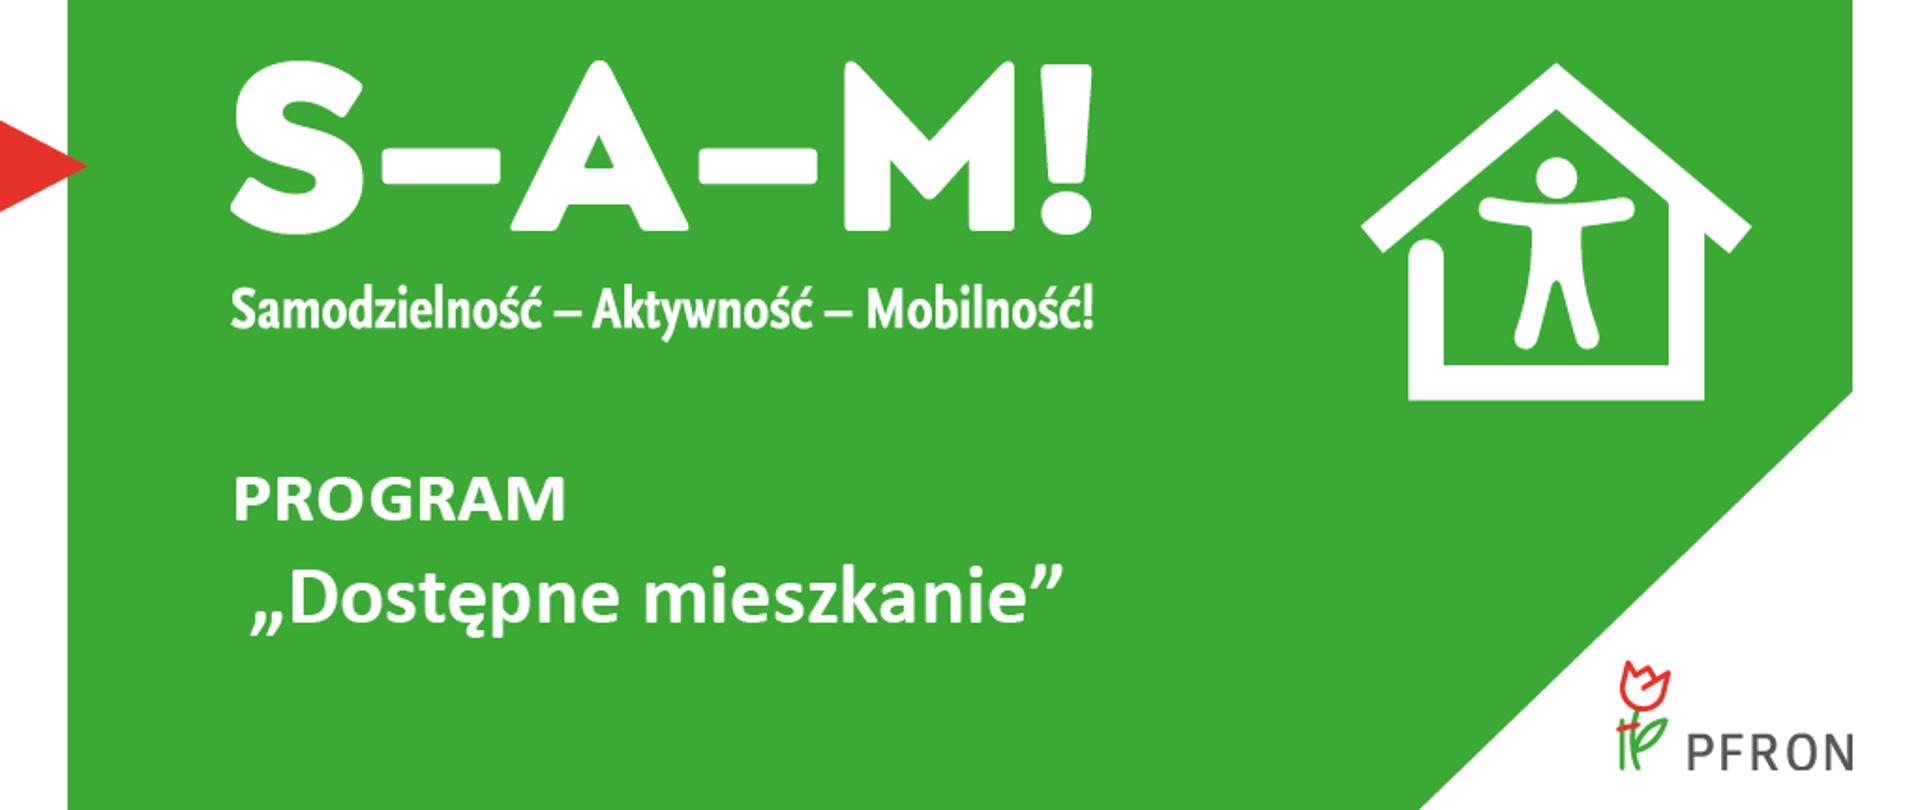 Grafika programu Dostępne Mieszkanie - biały napis na zielonym tle: S-A-M! Samodzielność - Aktywność - Mobilność!, obok rysunek przedstawiający postać człowieka w domu. W prawym dolnym rogu kolorowy logotyp PFRON